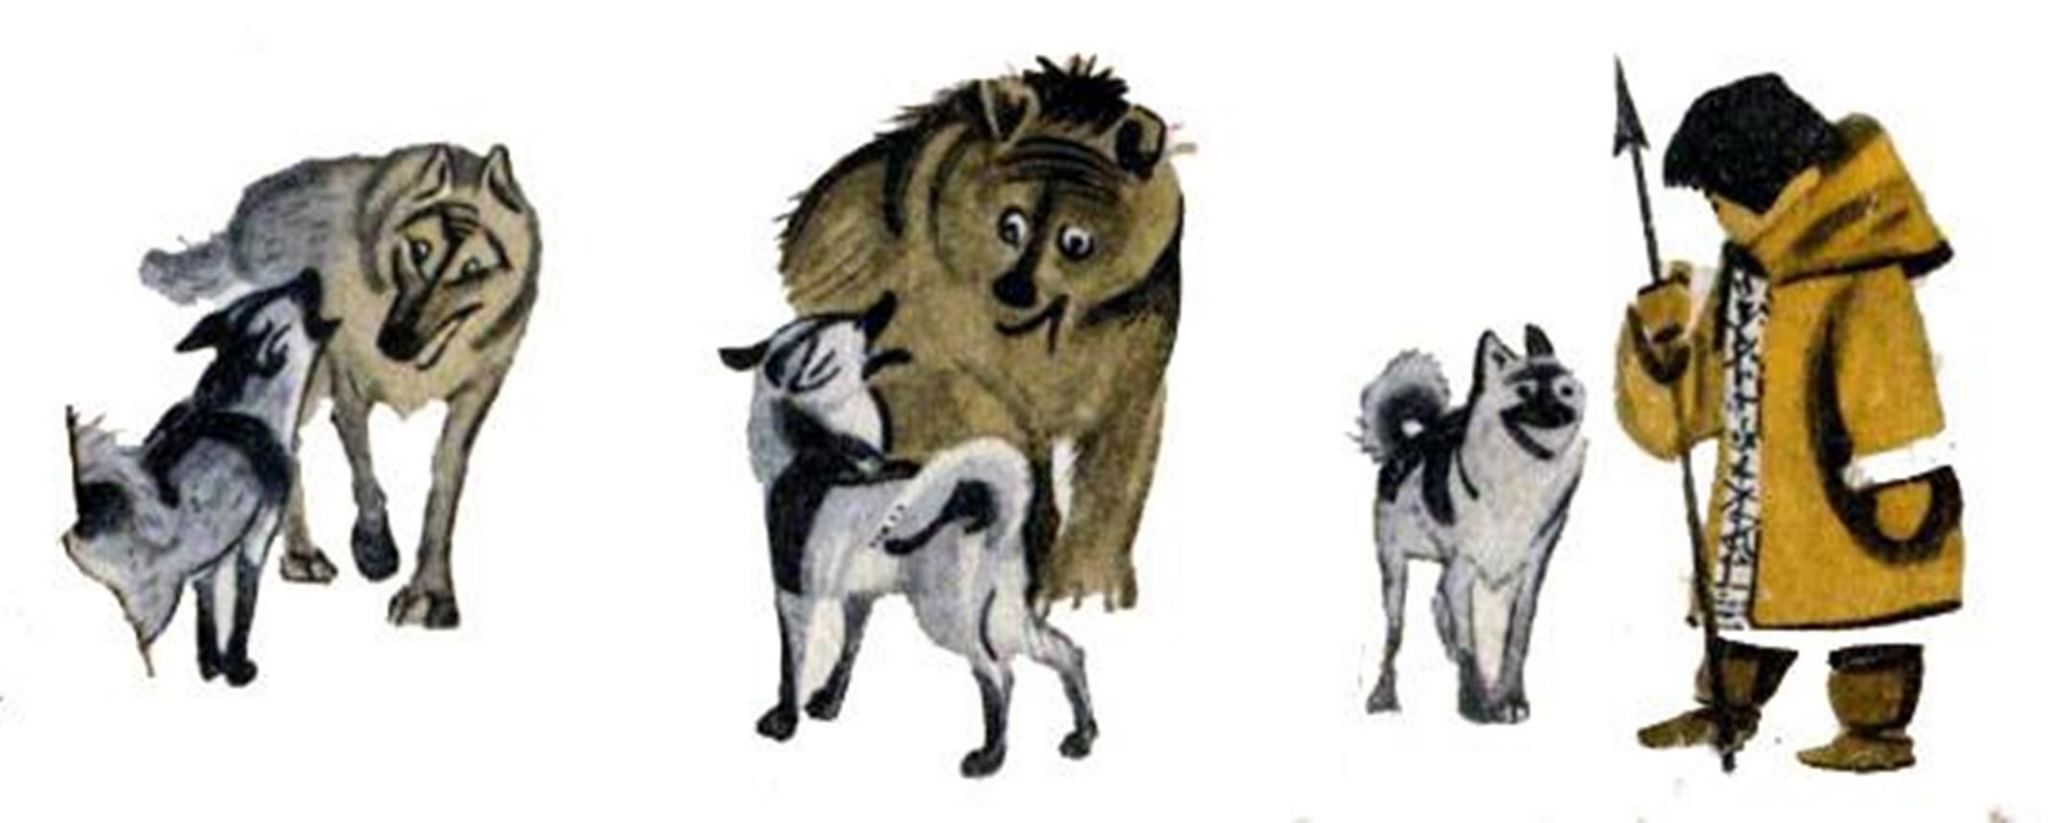 Давным давно в лесу жила собака сказка. Человек и собака Ненецкая сказка. Как собака нашла себе хозяина друга бурятская сказка. Народная Ненецкая сказка человек и собака. Ненецкая сказкачедовек и собака.